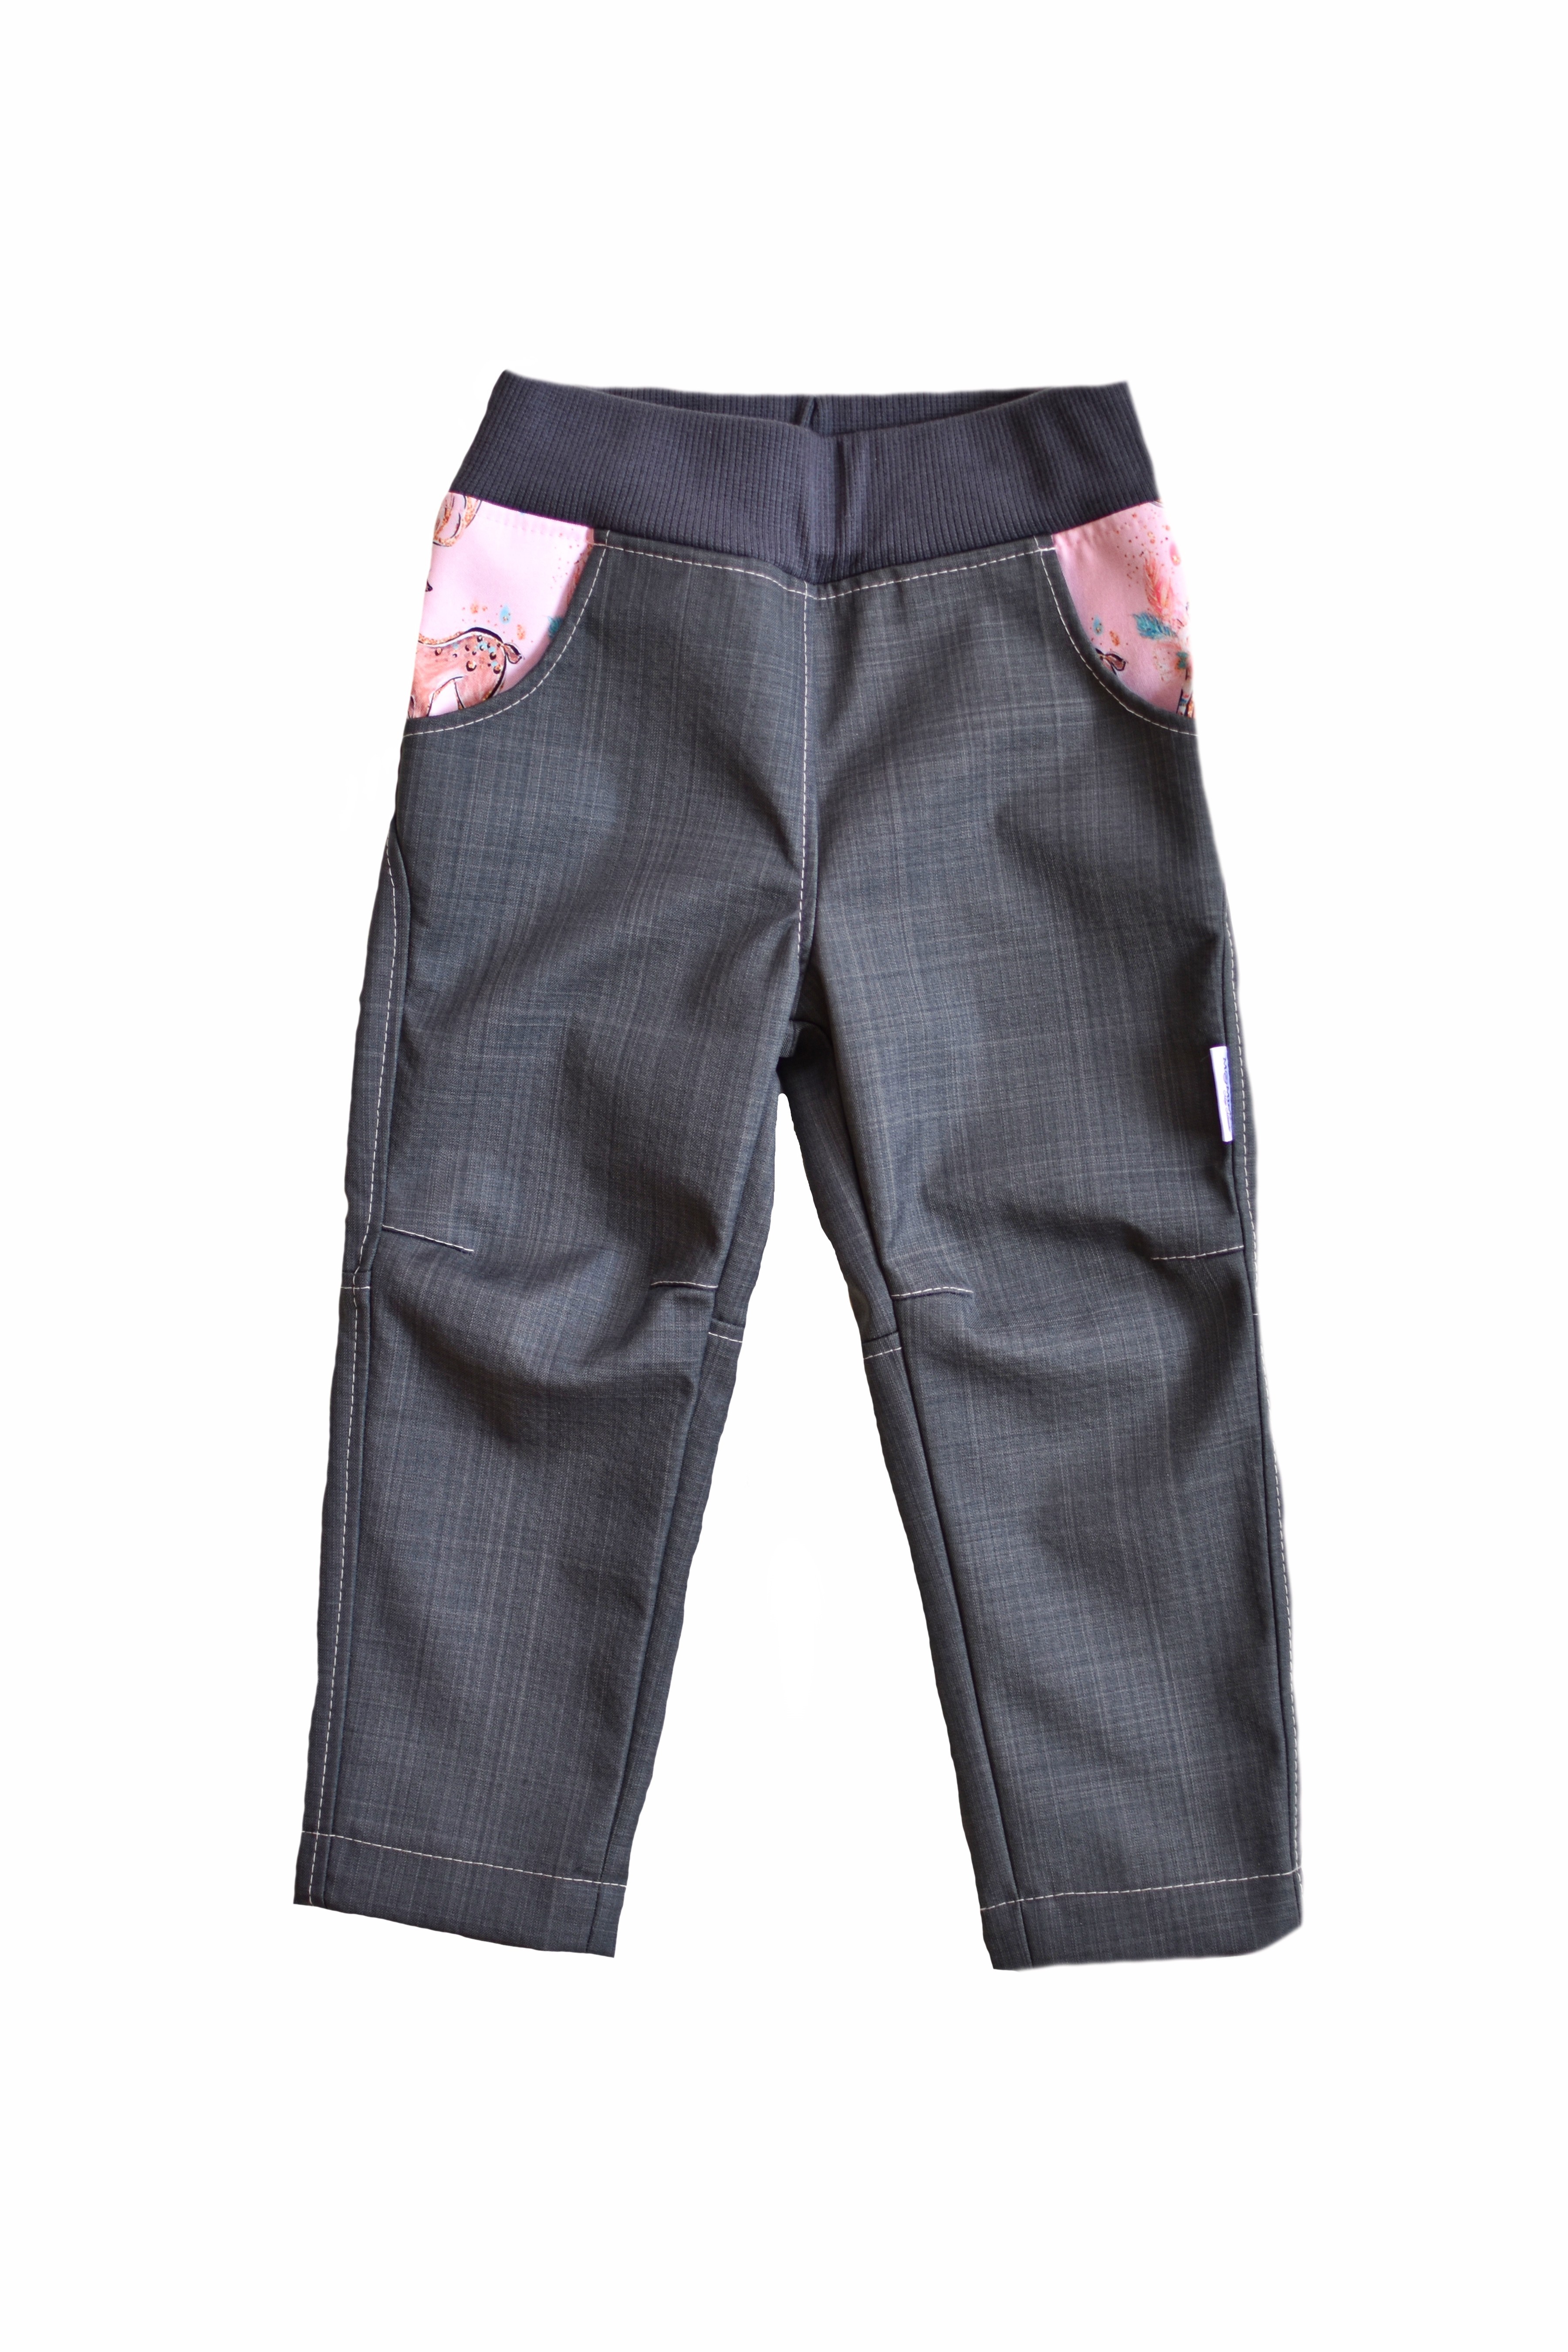 Šedé softshellové kalhoty jarní SLIM - 98